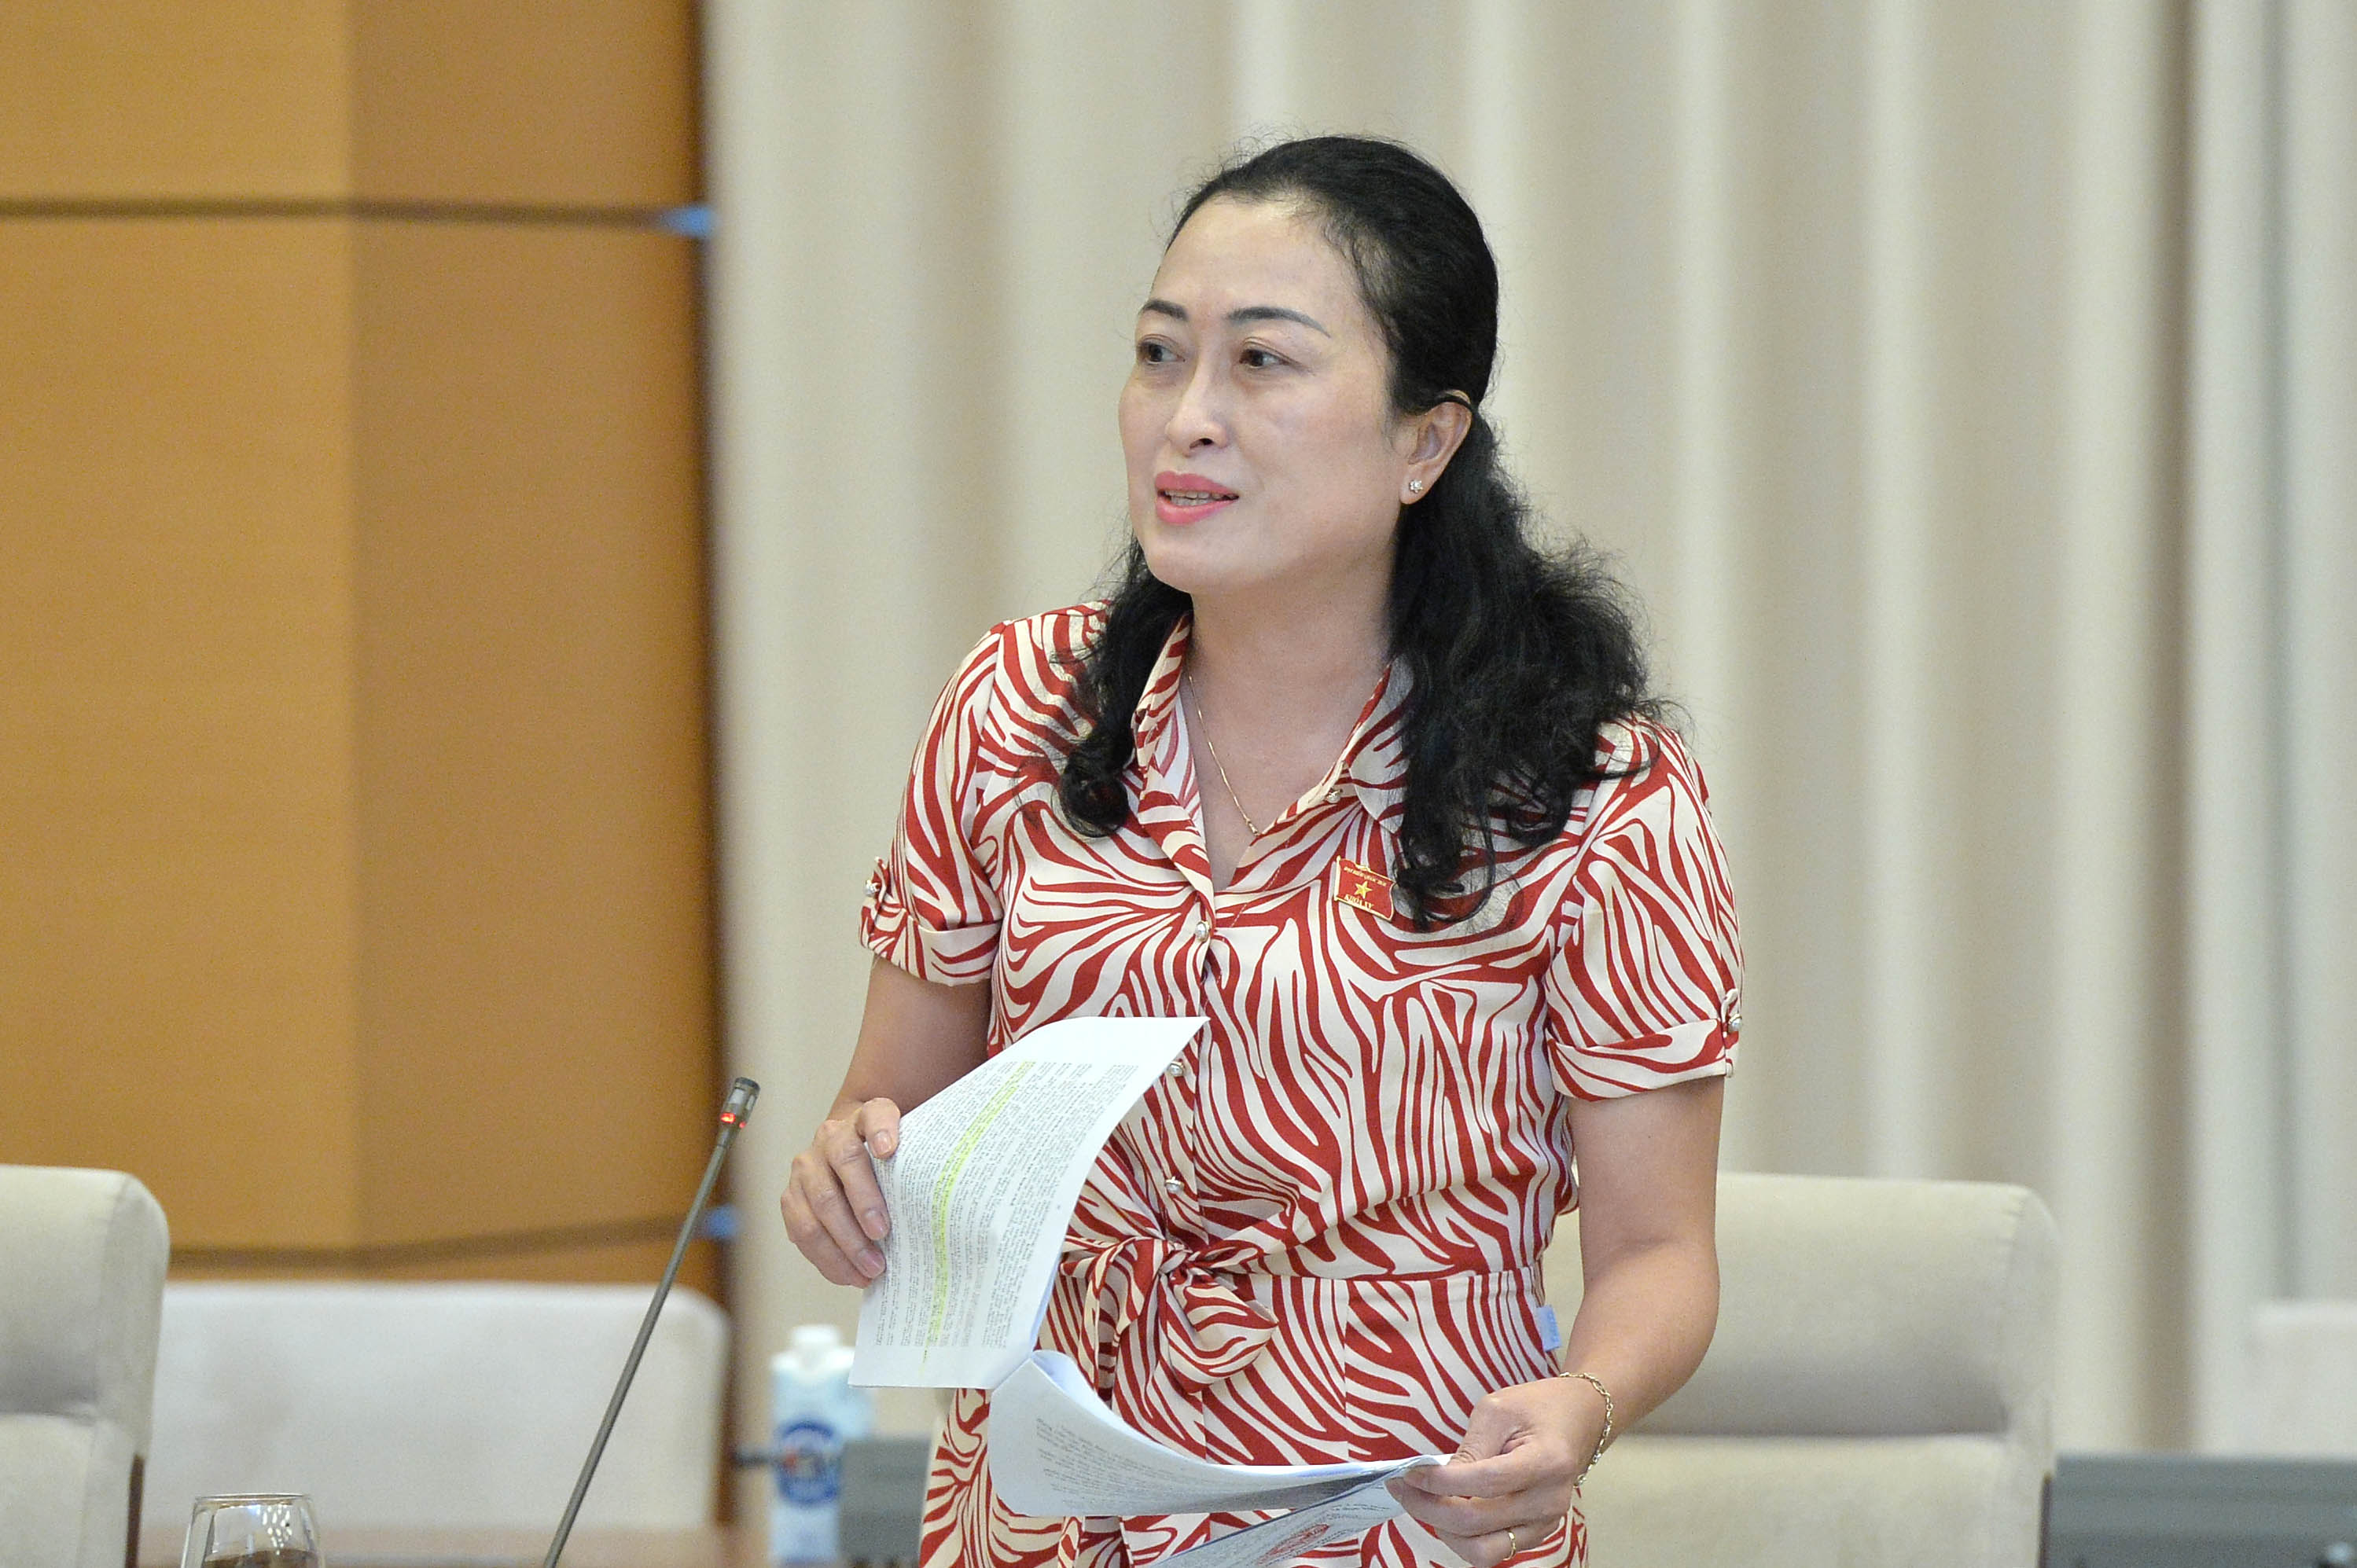 Phó Chủ tịch Quốc hội Nguyễn Khắc Định chủ trì làm việc với Chính phủ về hoạt động của đơn vị sự nghiệp công lập -0